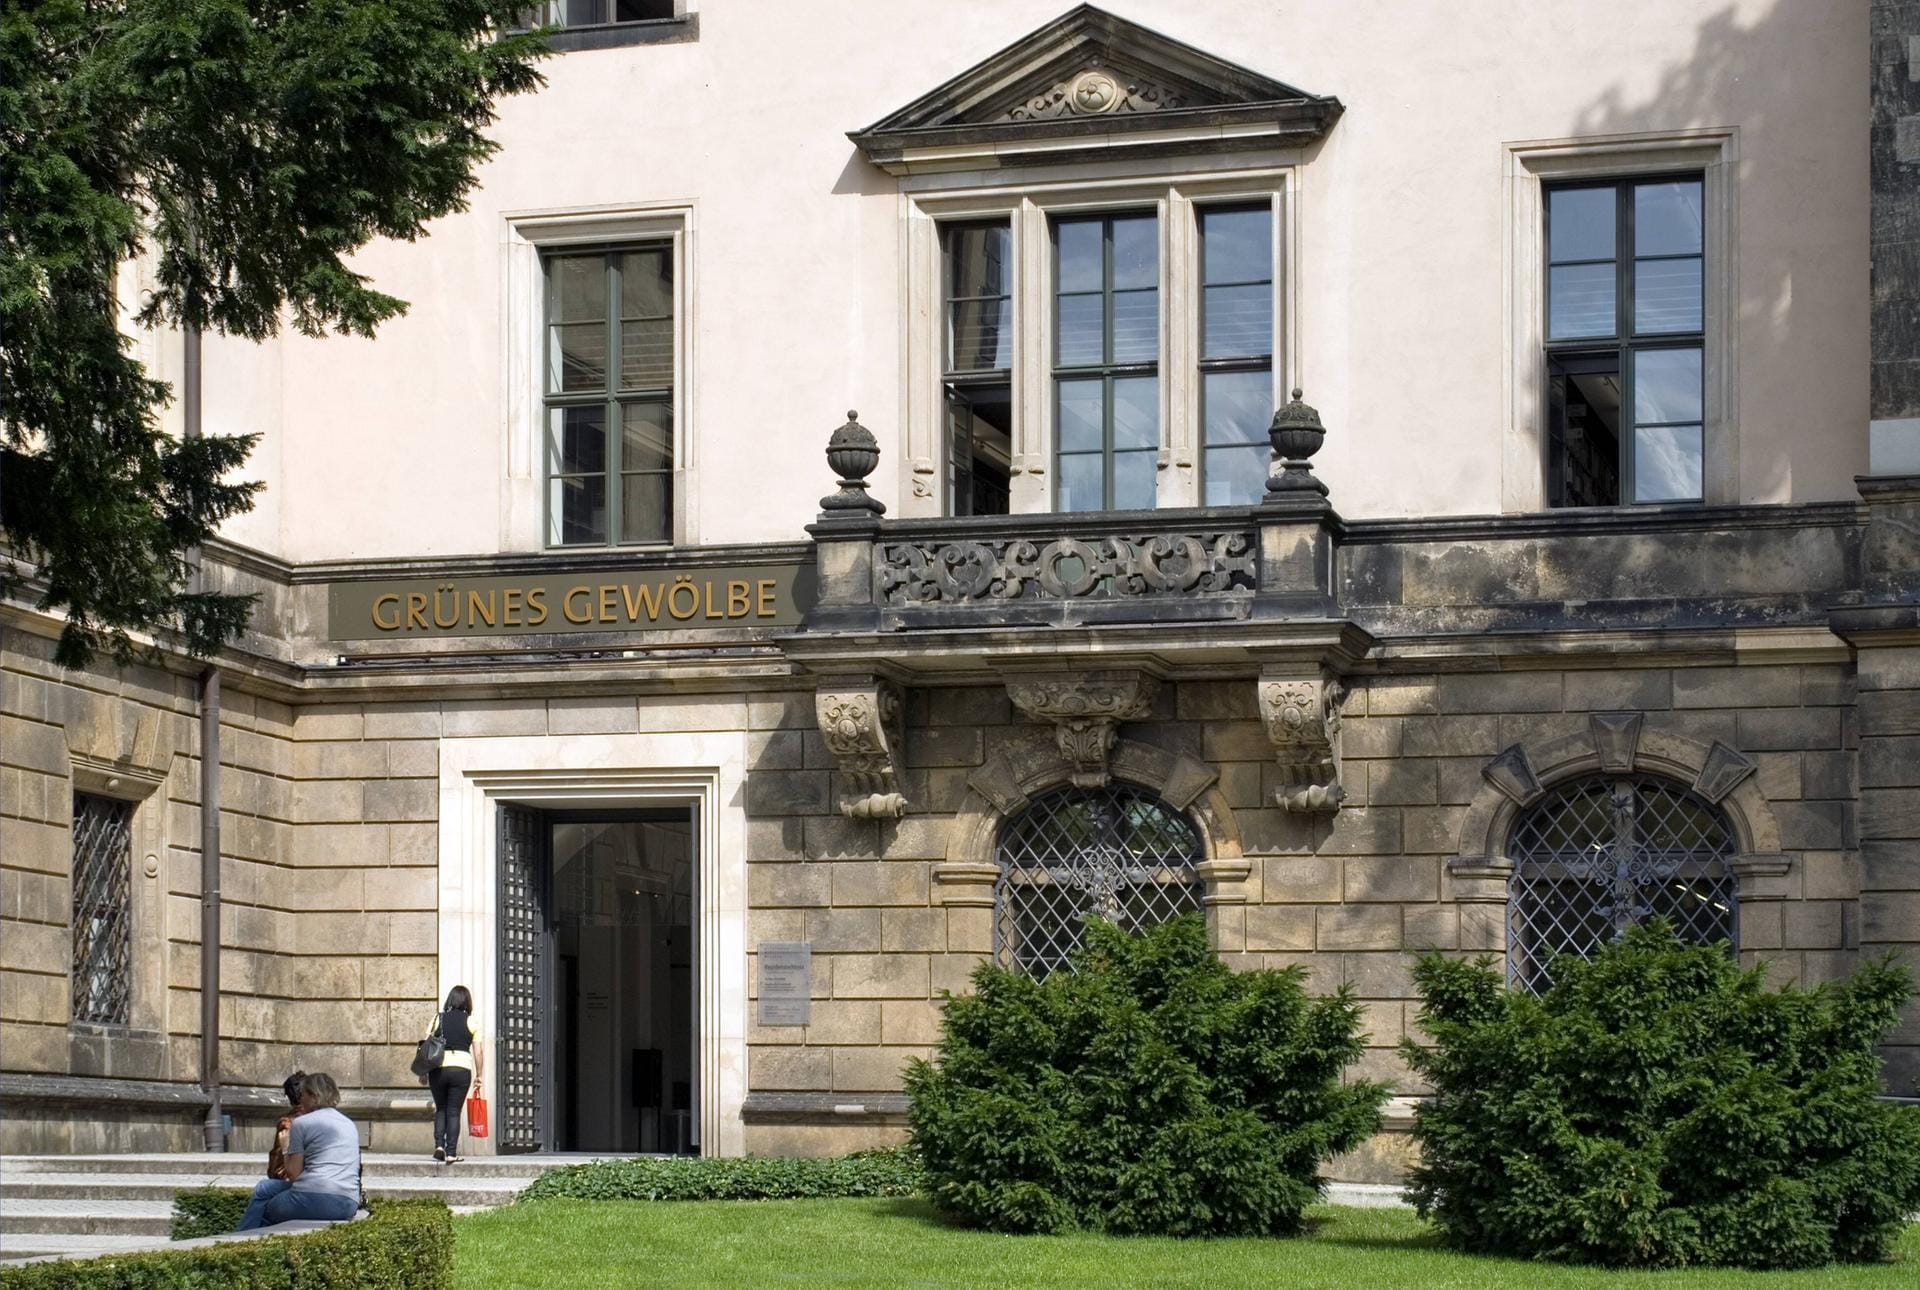 Grünes Gewölbe in Dresden: Dort ist die historische Museumssammlung der ehemaligen Schatzkammer der Wettiner Fürsten von der Renaissance bis zum Klassizismus untergebracht.